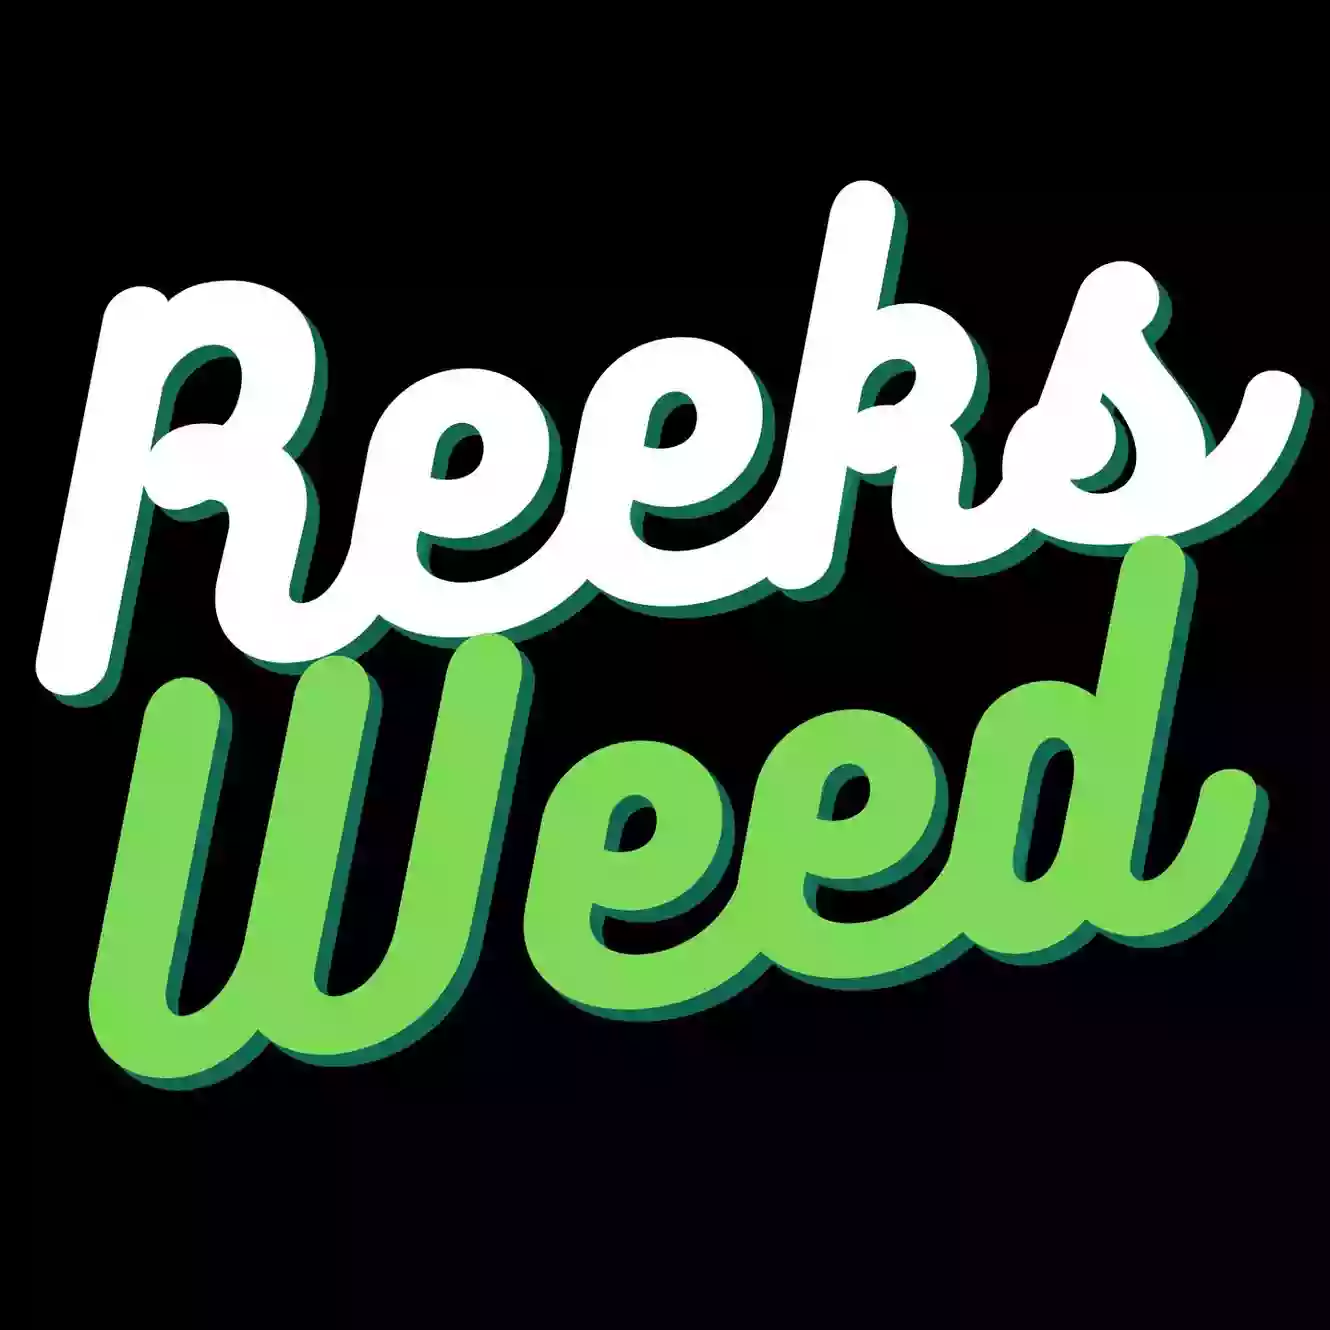 Reeks weed